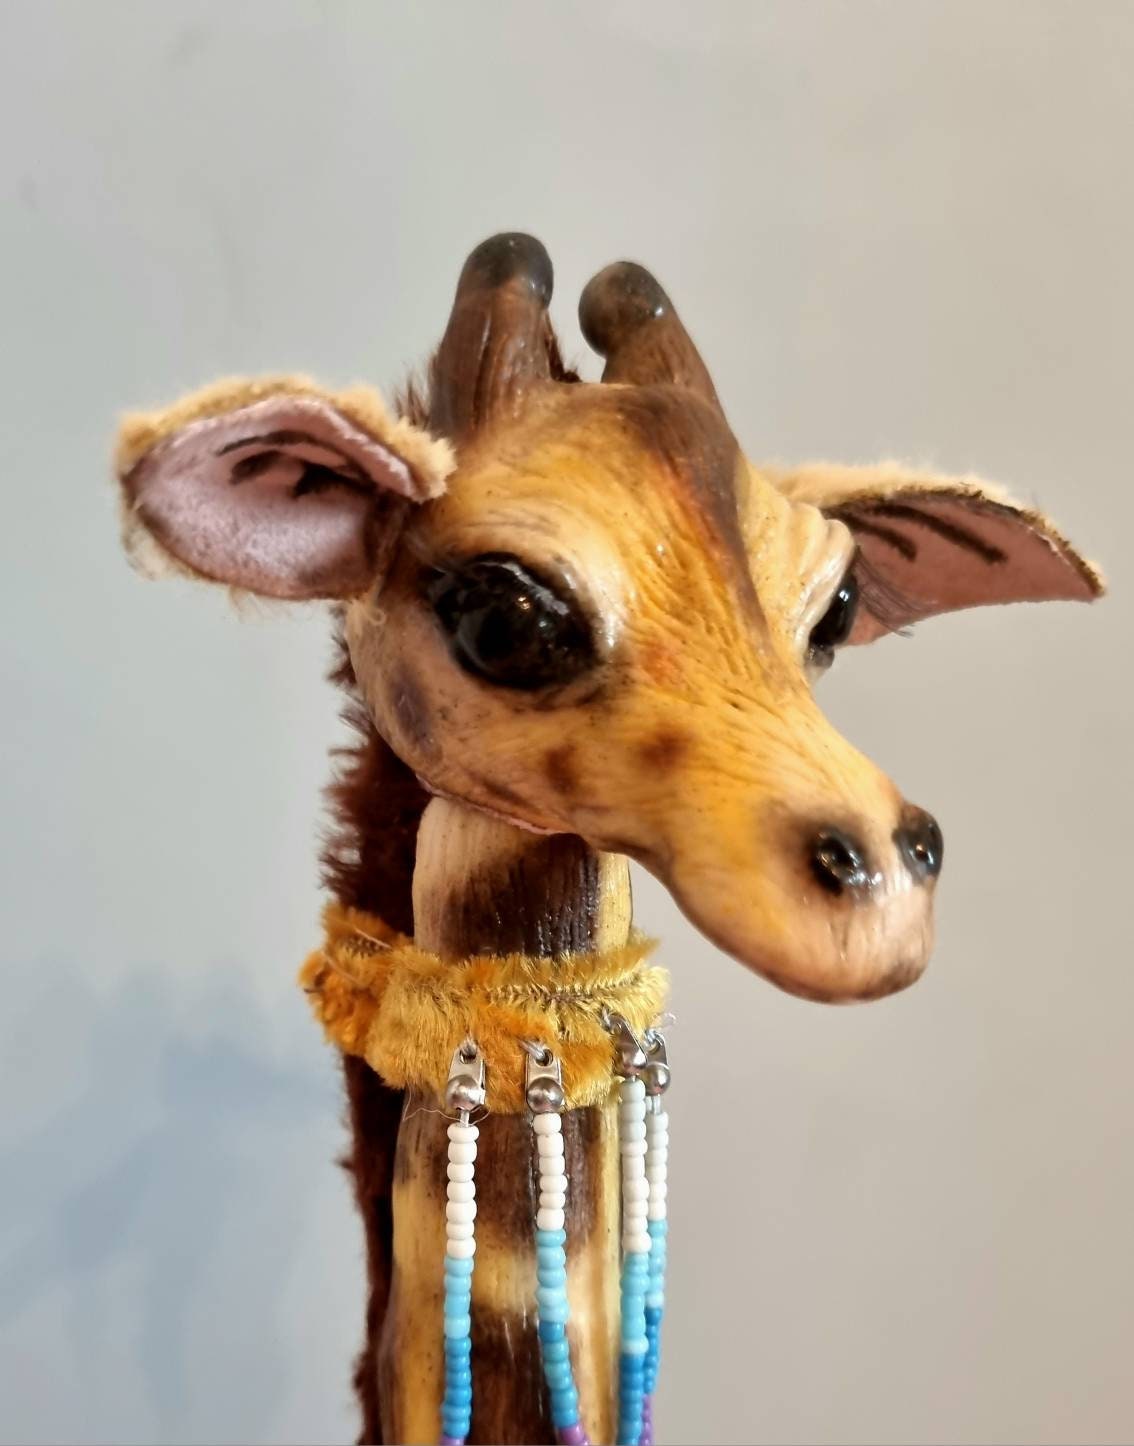 Jirafa - Animal de peluche realista con patas enmarcadas en alambre y  cuello suave, muñeca de felpa de jirafa para cumpleaños de niños y niñas  (20